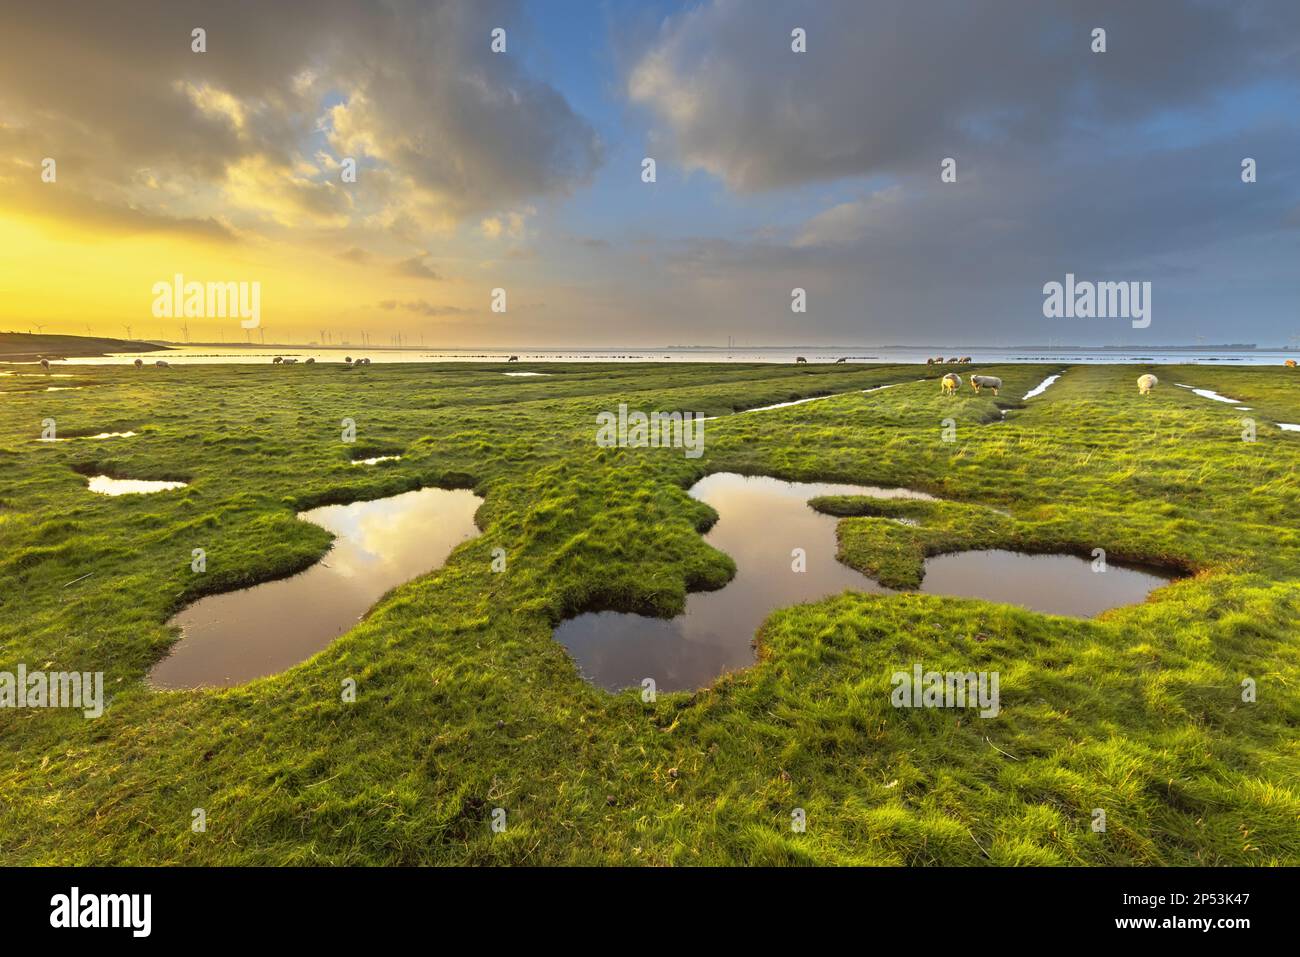 Landgewinnung im Sumpf der Gezeiten Wattenmeer der Punt van Reide im Wattenmeergebiet an der Küste von Groningen in den Niederlanden Stockfoto